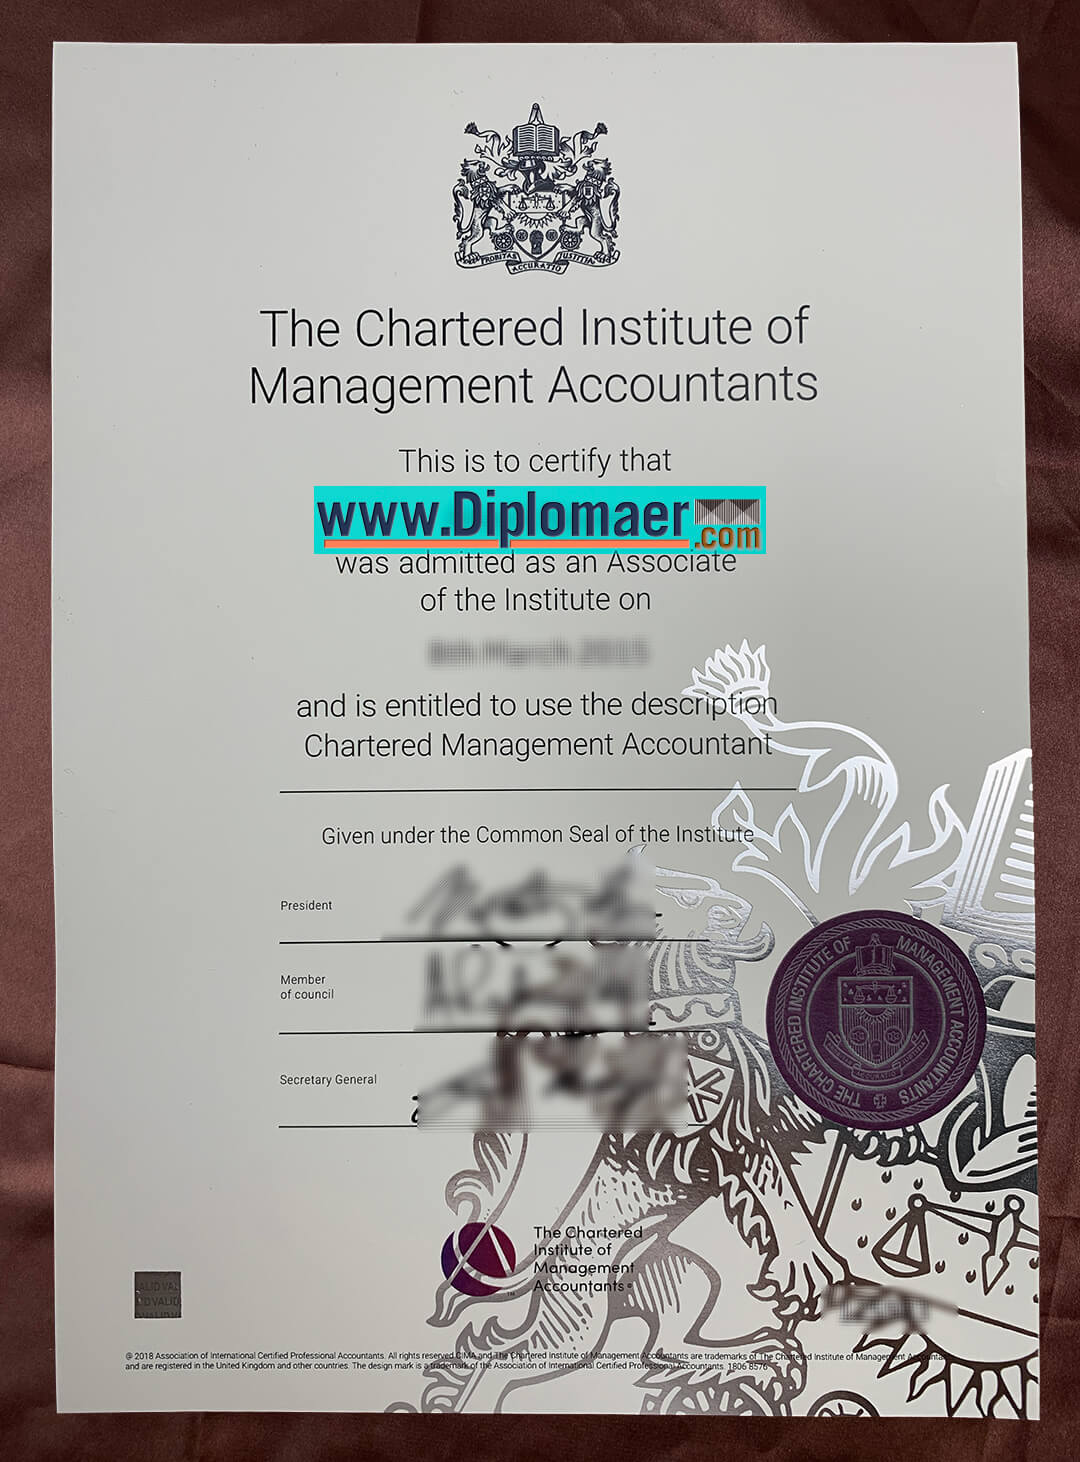 CIMA Fake Diploma - Is it worth buying a fake CIMA Diploma?